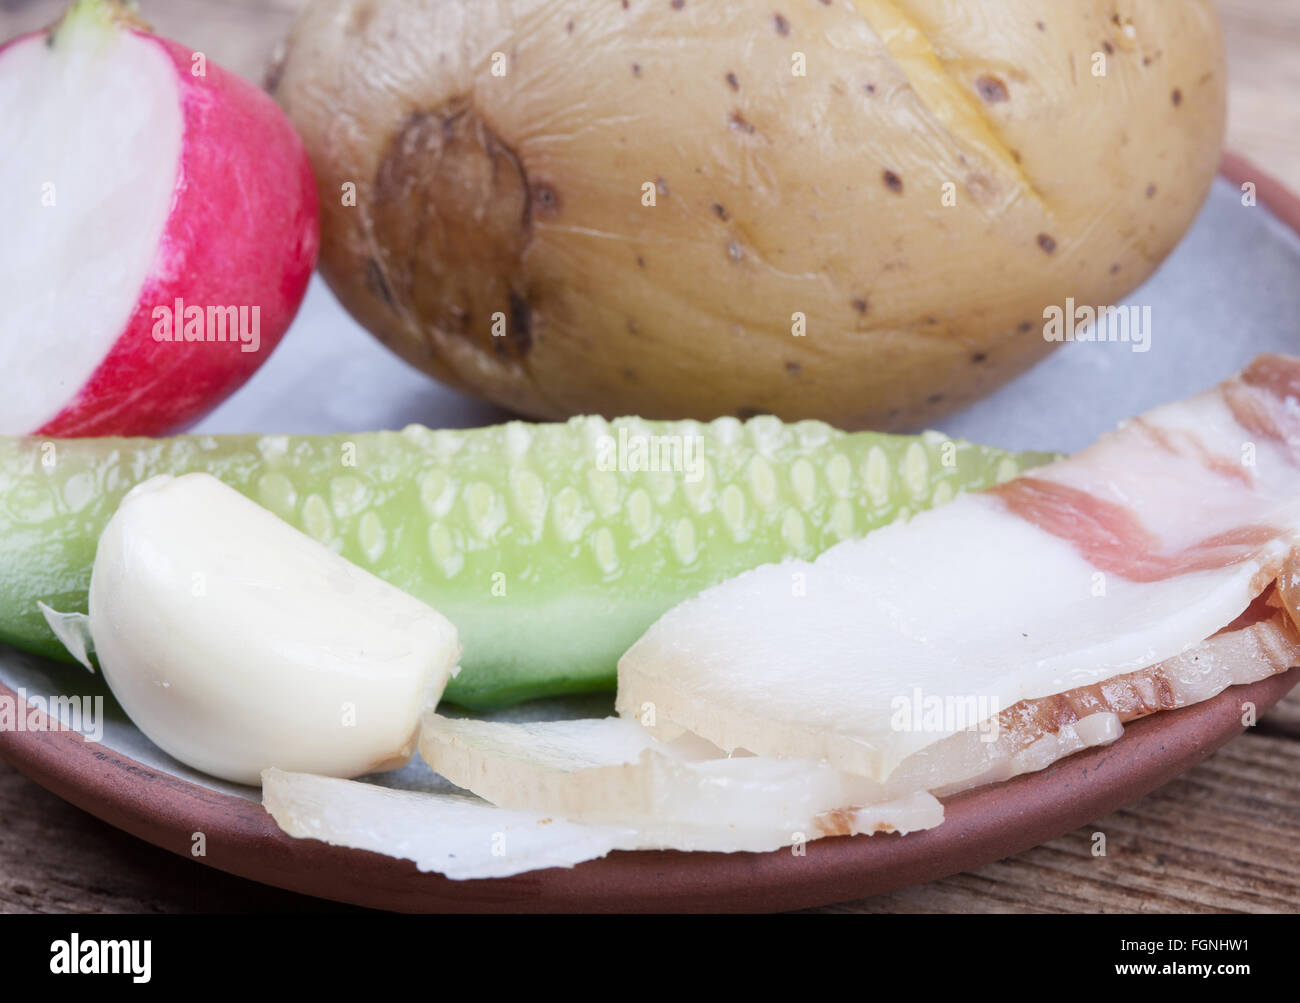 La comida en el fondo de la placa, vegetales y grasas closeup Foto de stock